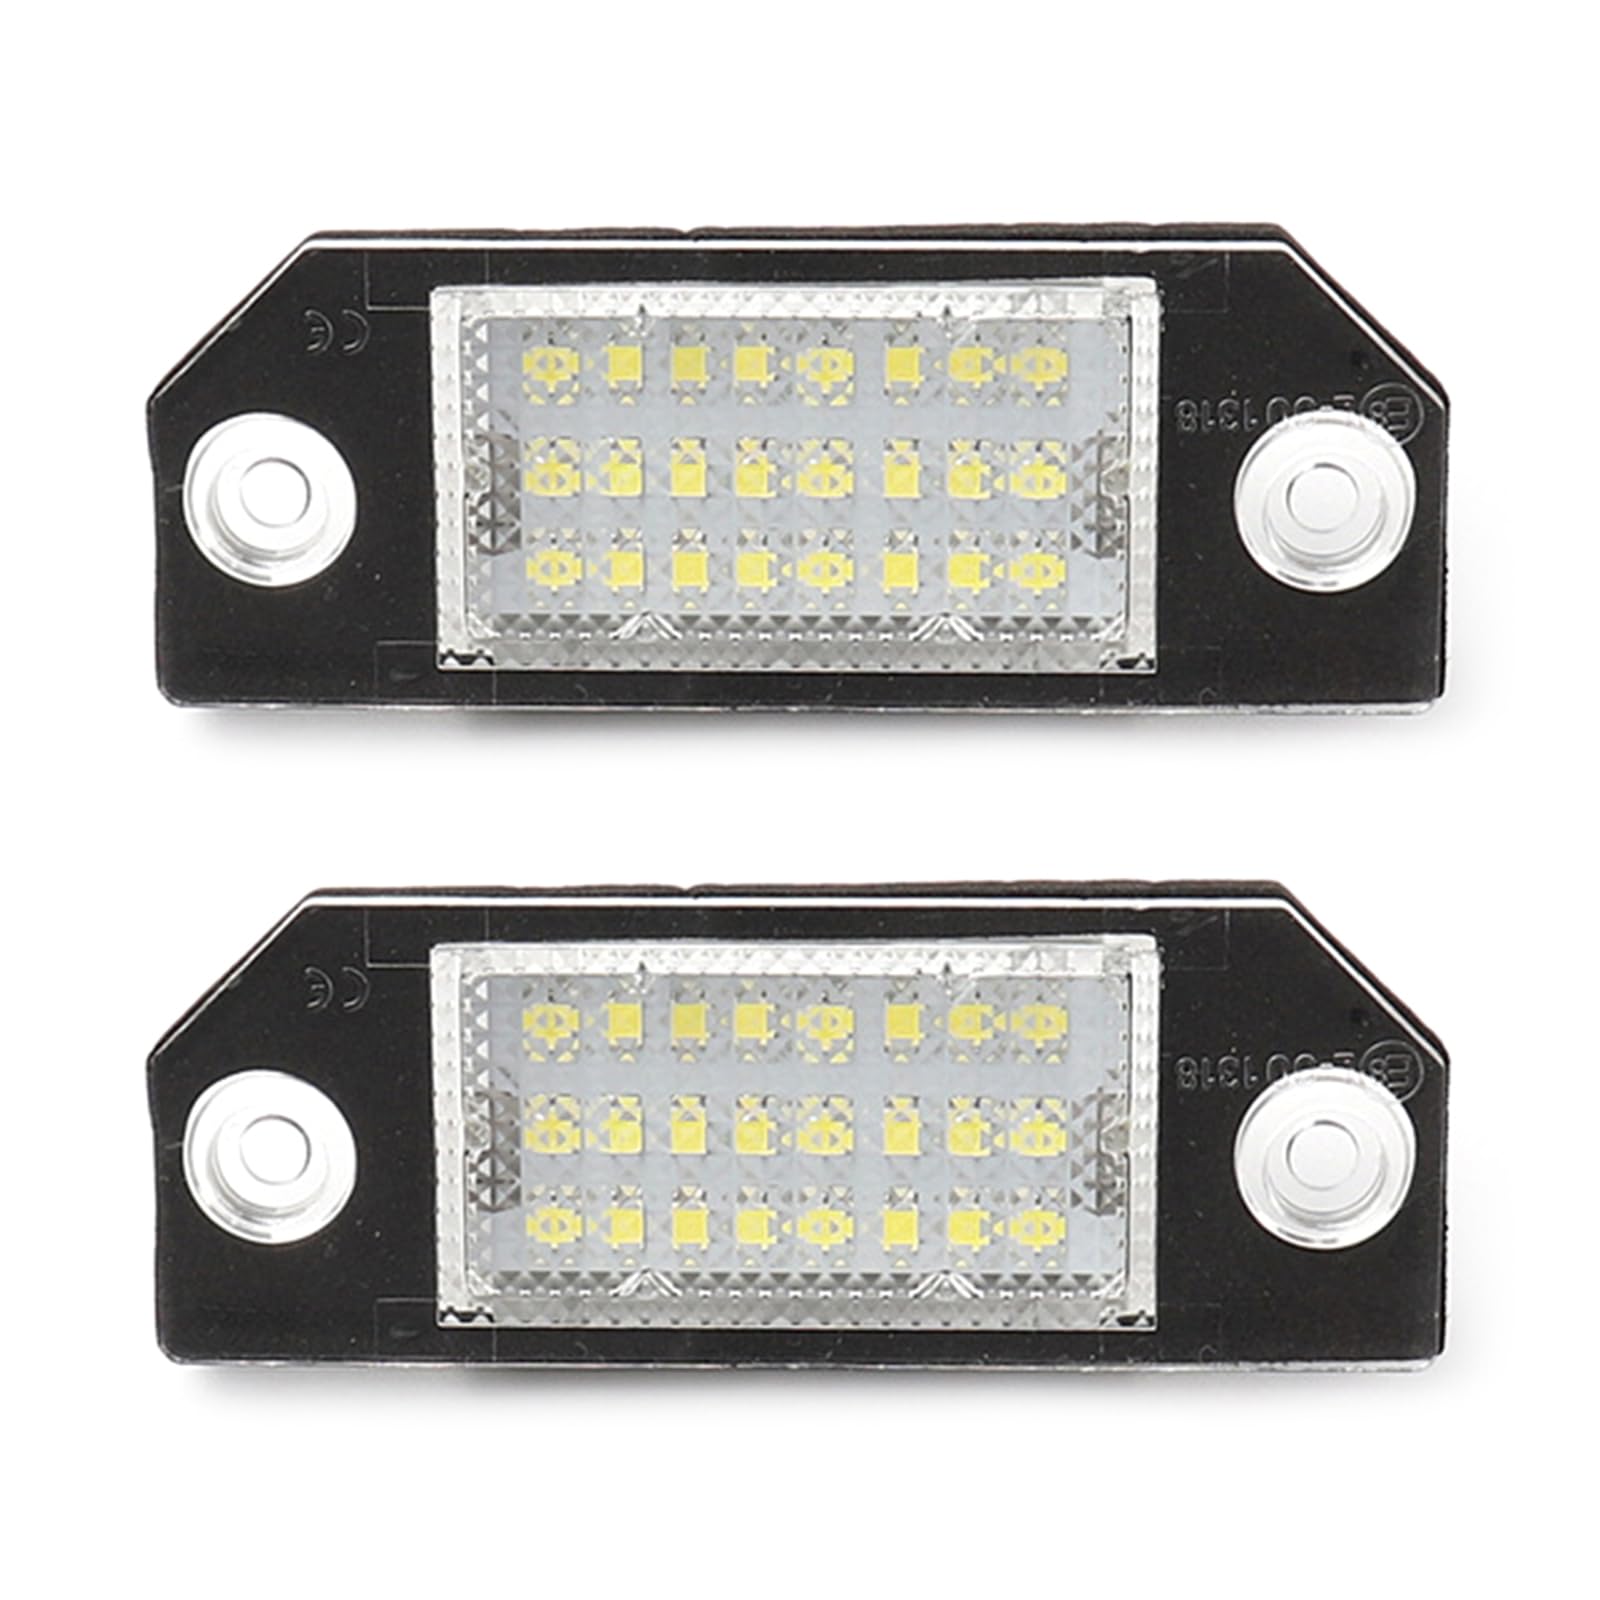 Wasserdichte und staubdichte LED-Kennzeichenbeleuchtung für Fahrzeuge 03–08 von LIbgiubhy